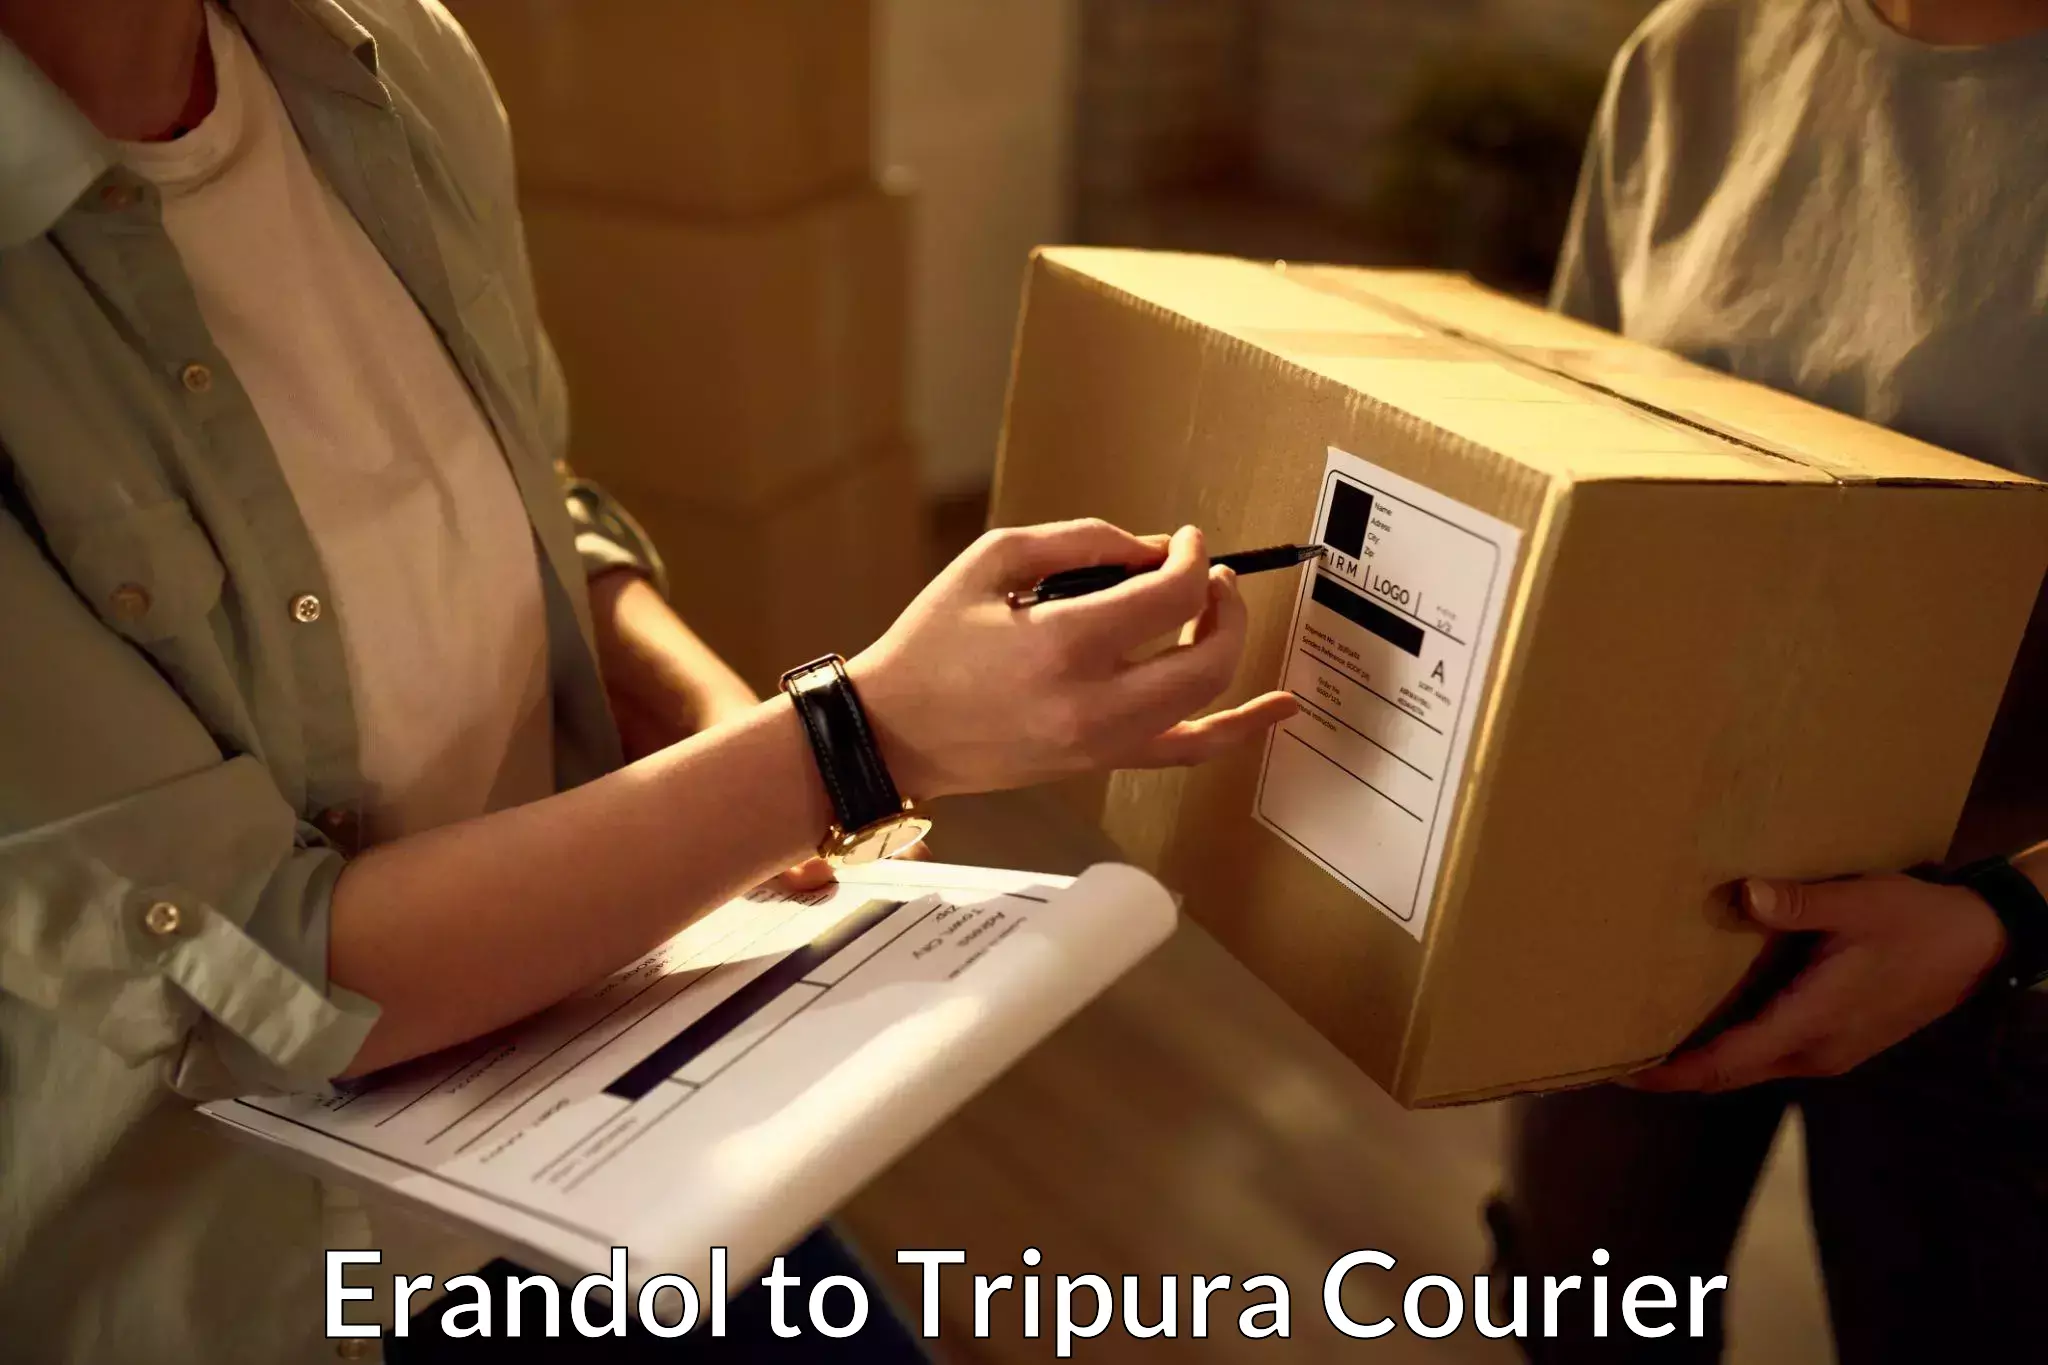 Professional parcel services Erandol to Udaipur Tripura